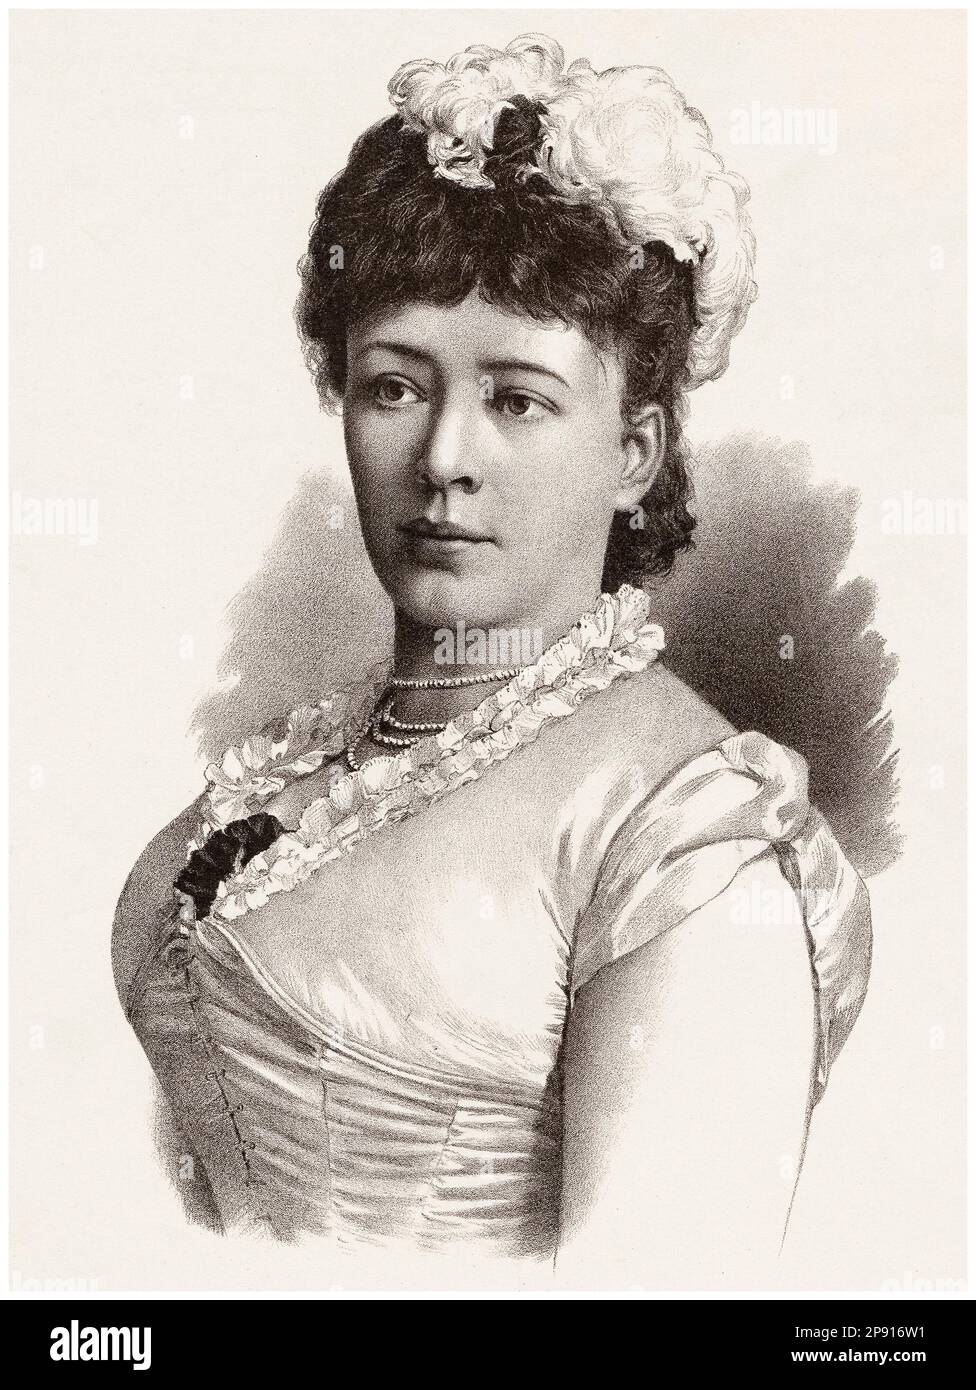 Bertha von Suttner (1843-1914), österreichisch-böhmische Pazifistin und Schriftstellerin, erste Frau mit Friedensnobelpreis, Porträtzeichnung von Jos. Eberle & Co, 1890 Stockfoto